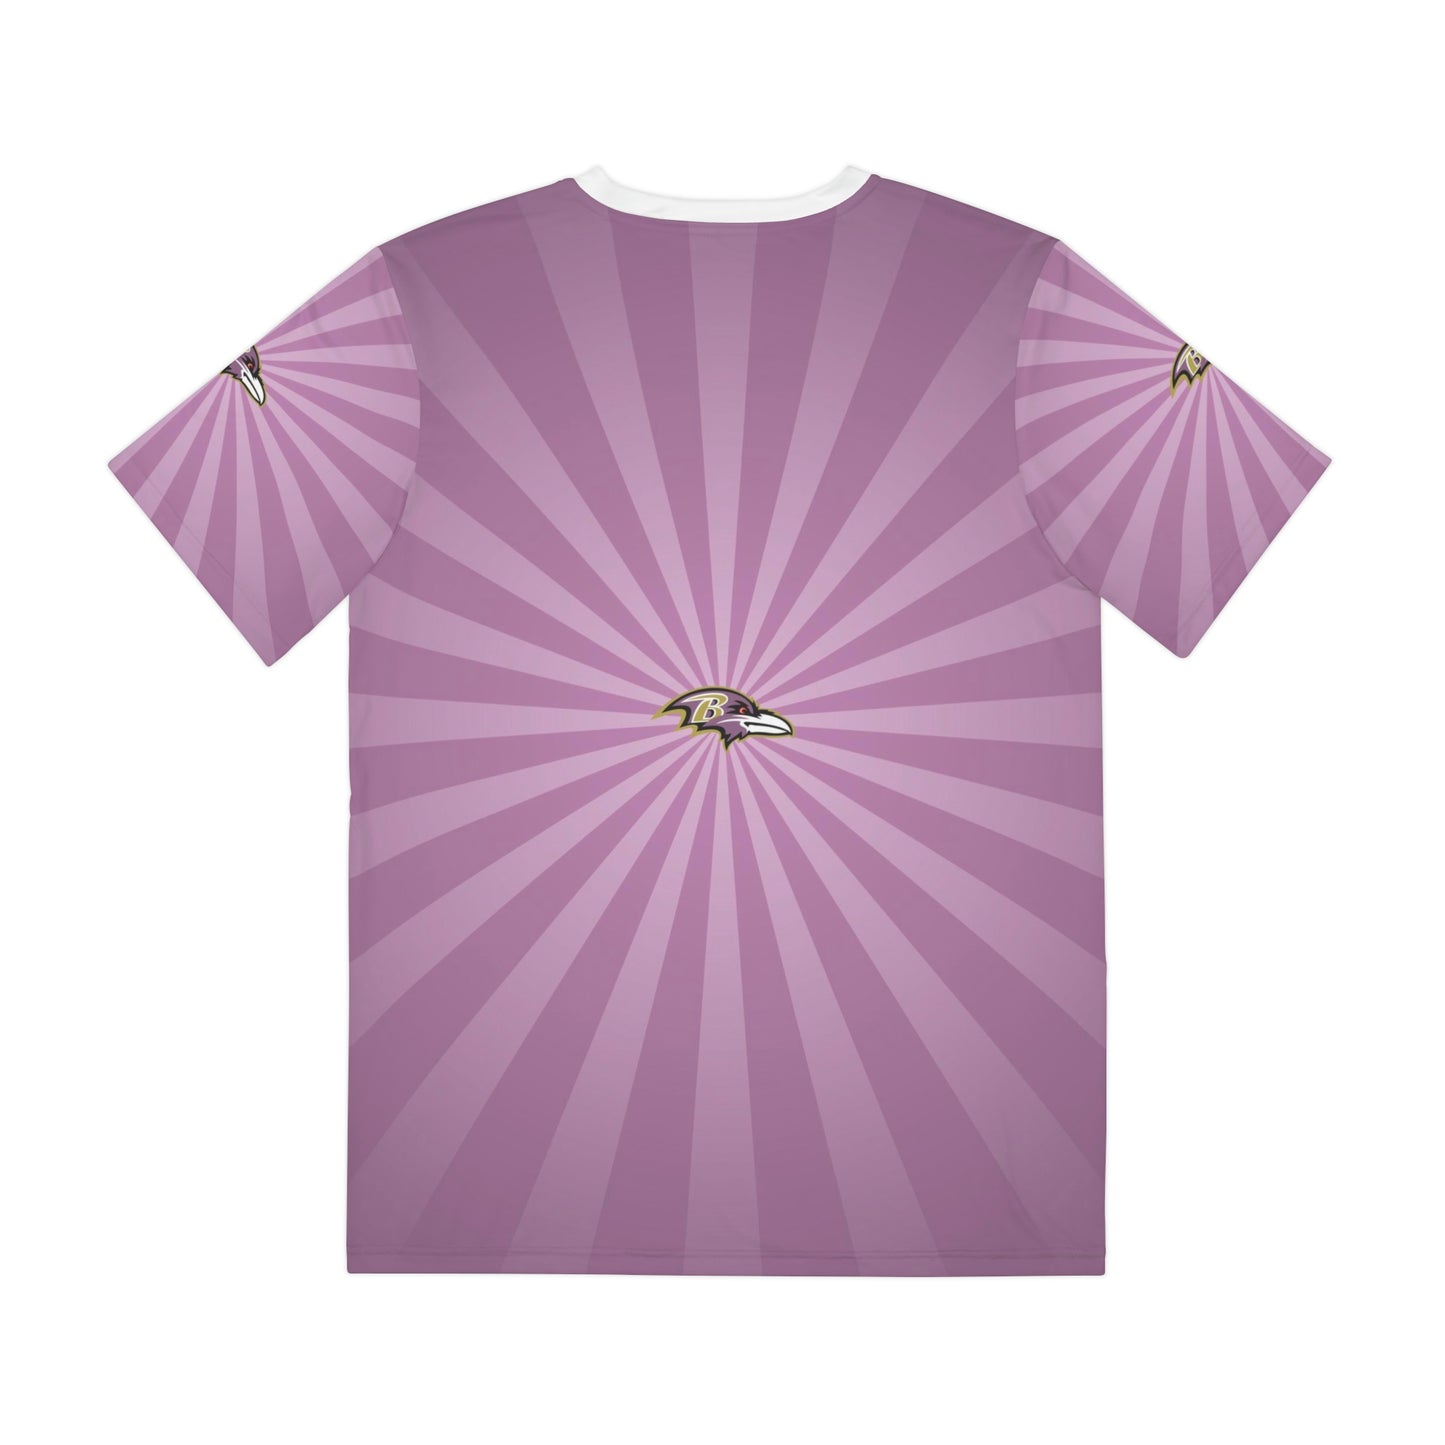 Geotrott NFL Baltimore Ravens Men's Polyester All Over Print Tee T-Shirt